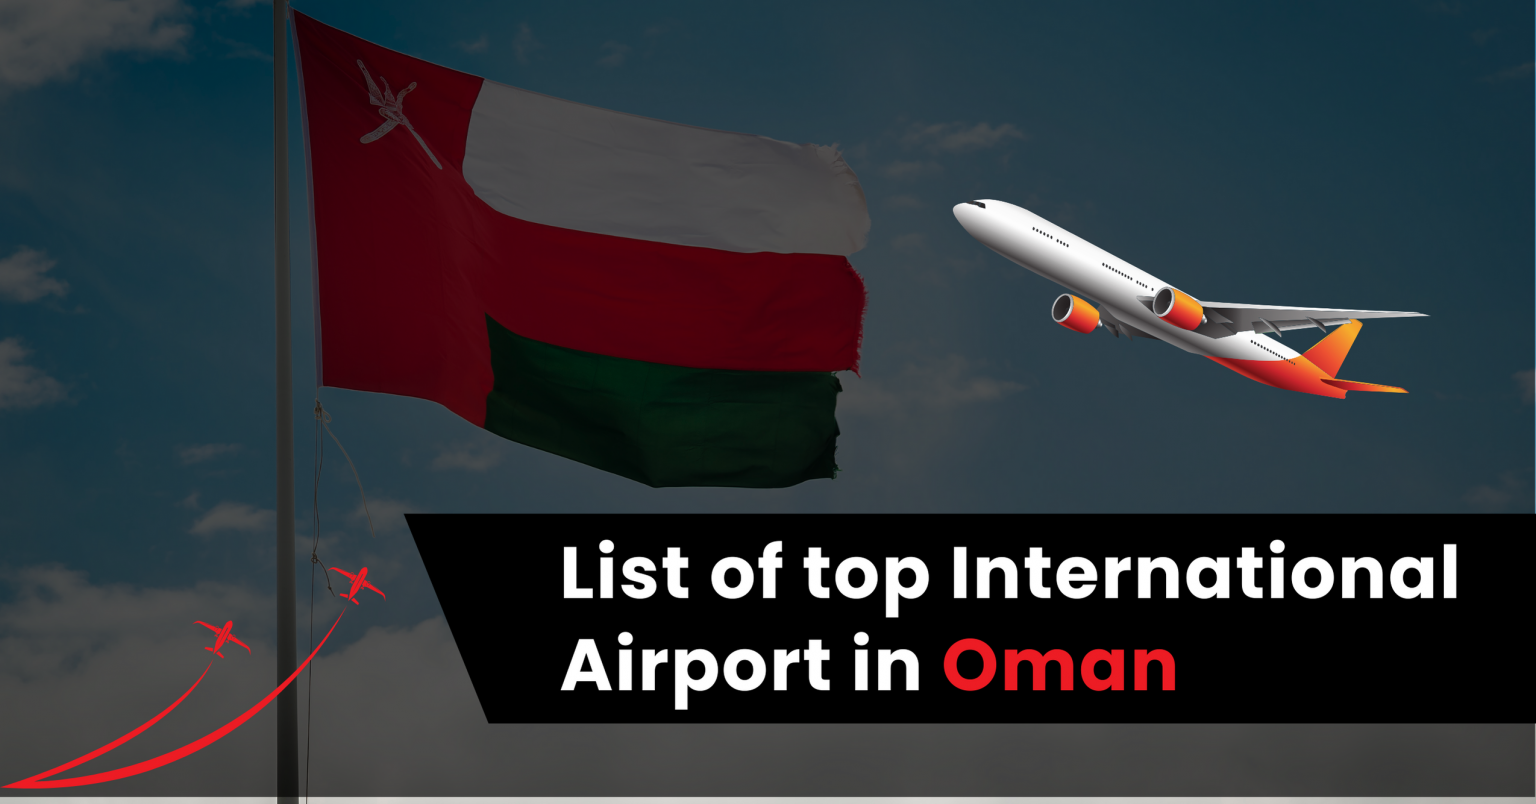 Oman Airports